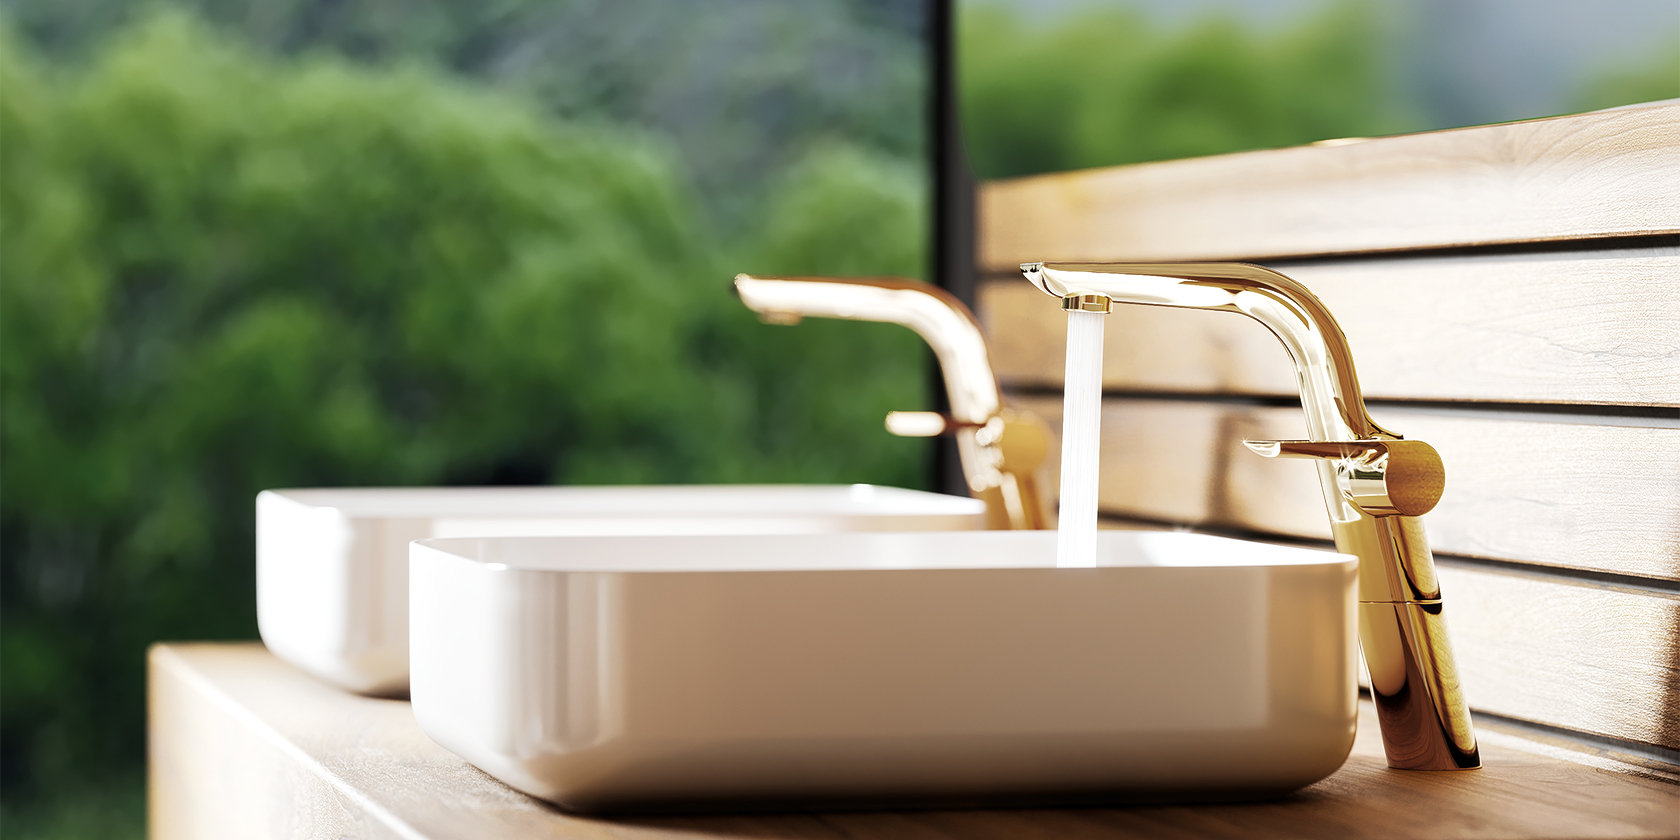 «Солнечный» люкс для современной ванной - Jörger Design представляет Exal в благородной латуни